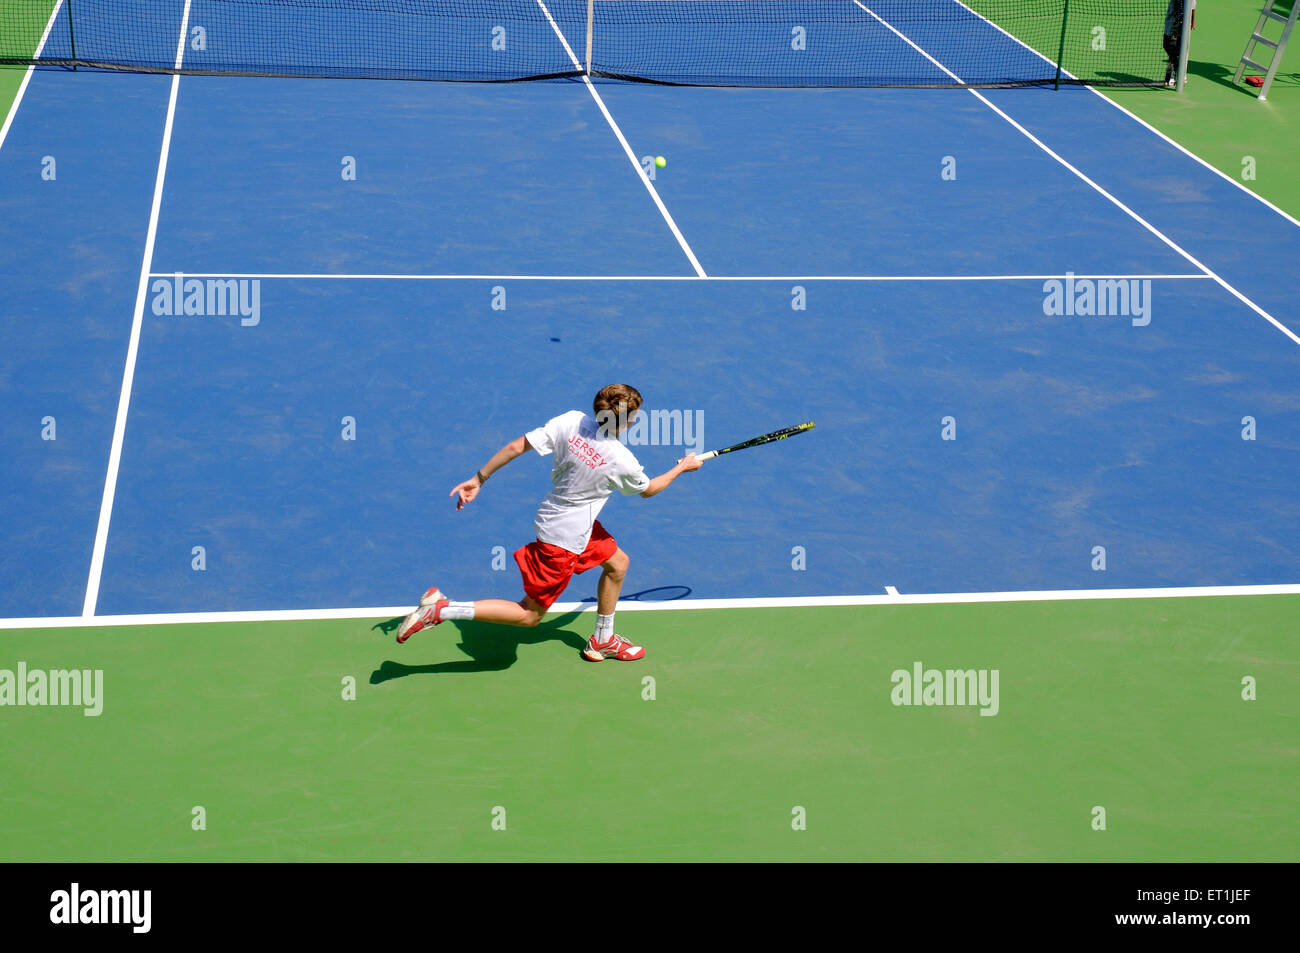 Scott Clayton, joueur de tennis britannique, jouant au tennis Anforhand, Pune, Maharashtra,Inde, Asie Banque D'Images